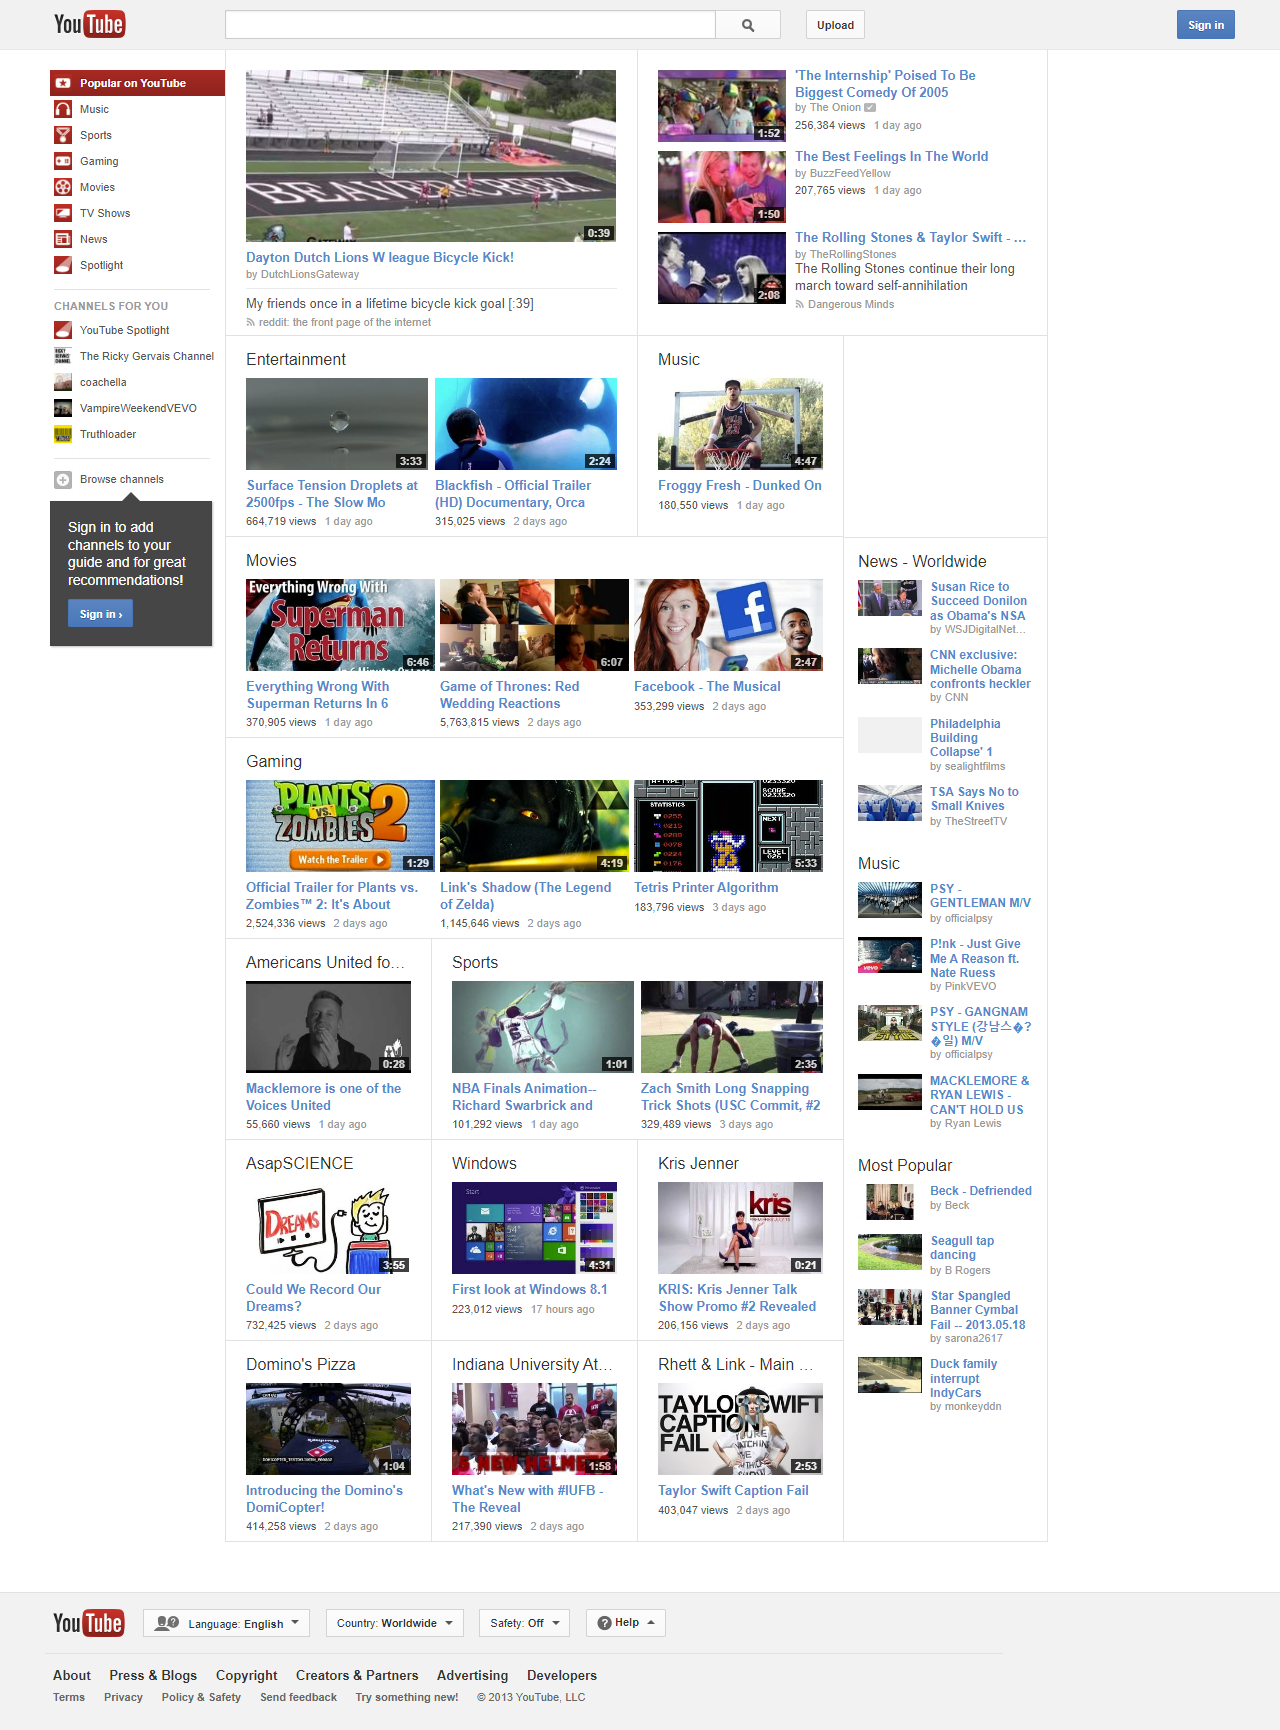 YouTube in 2013